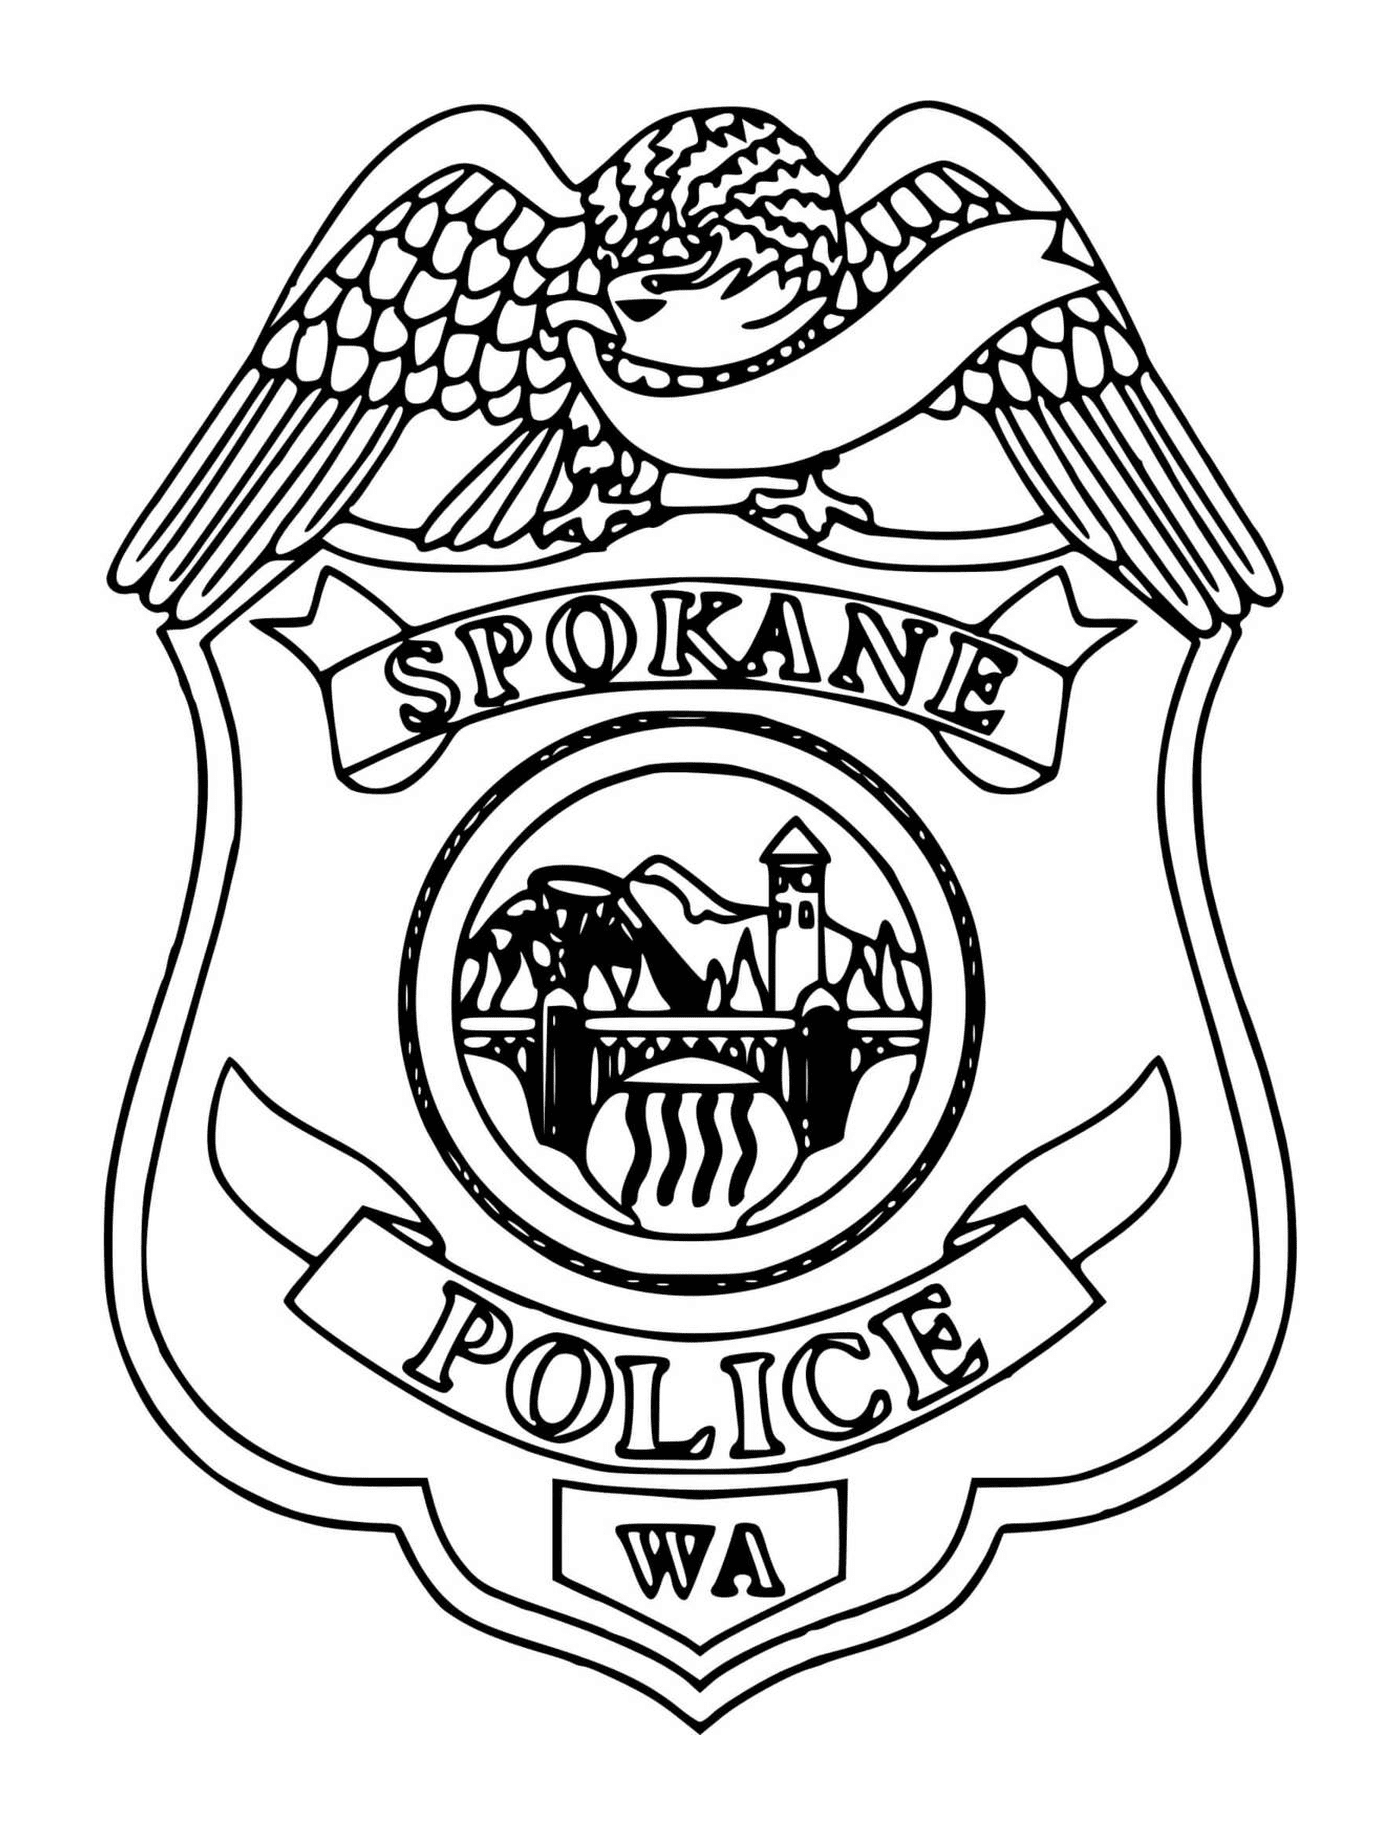  Spokane Police Badge 